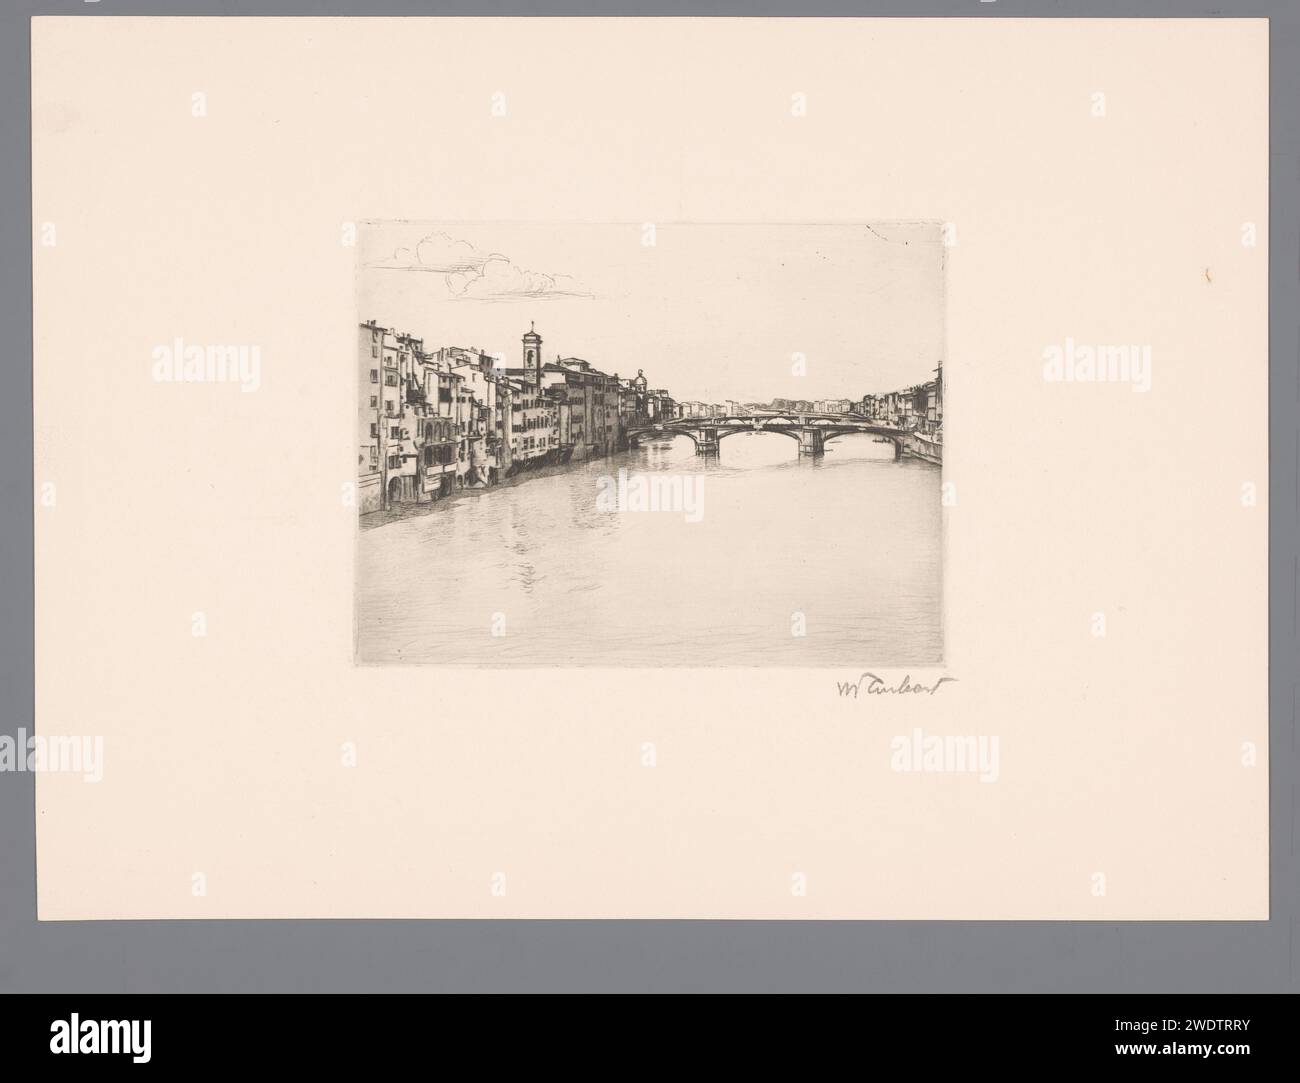 Blick auf Florenz vom Arno, Guglielmo Taubert, 1886 - 1927 Druck Florenz Papier ätzt die Stadt im Allgemeinen; „Veduta“. fluss. Landschaft mit Brücke, Viadukt oder Aquädukt Arno. Florenz Stockfoto